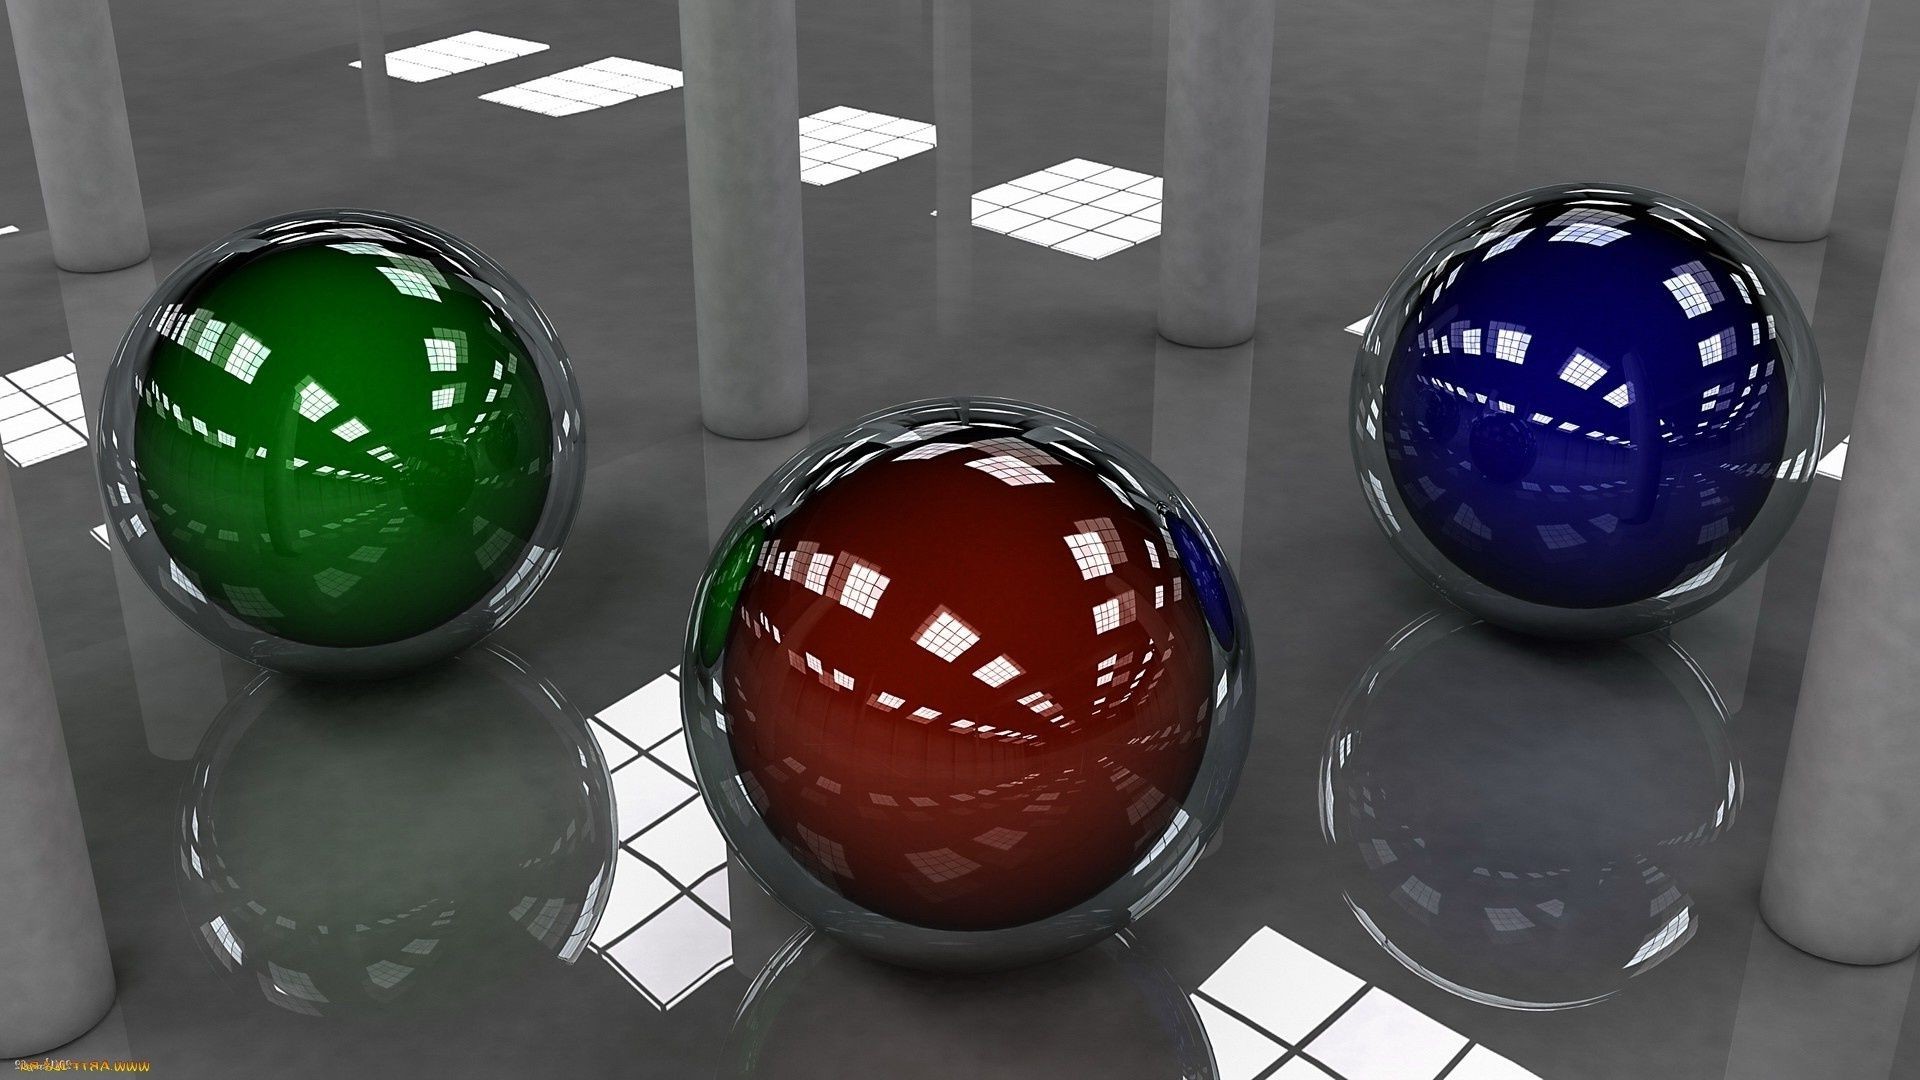 геометрические фигуры сфера мяч рабочего стола бизнес отражение интернет иллюстрация остекленные символ формы круглый сферически дизайн